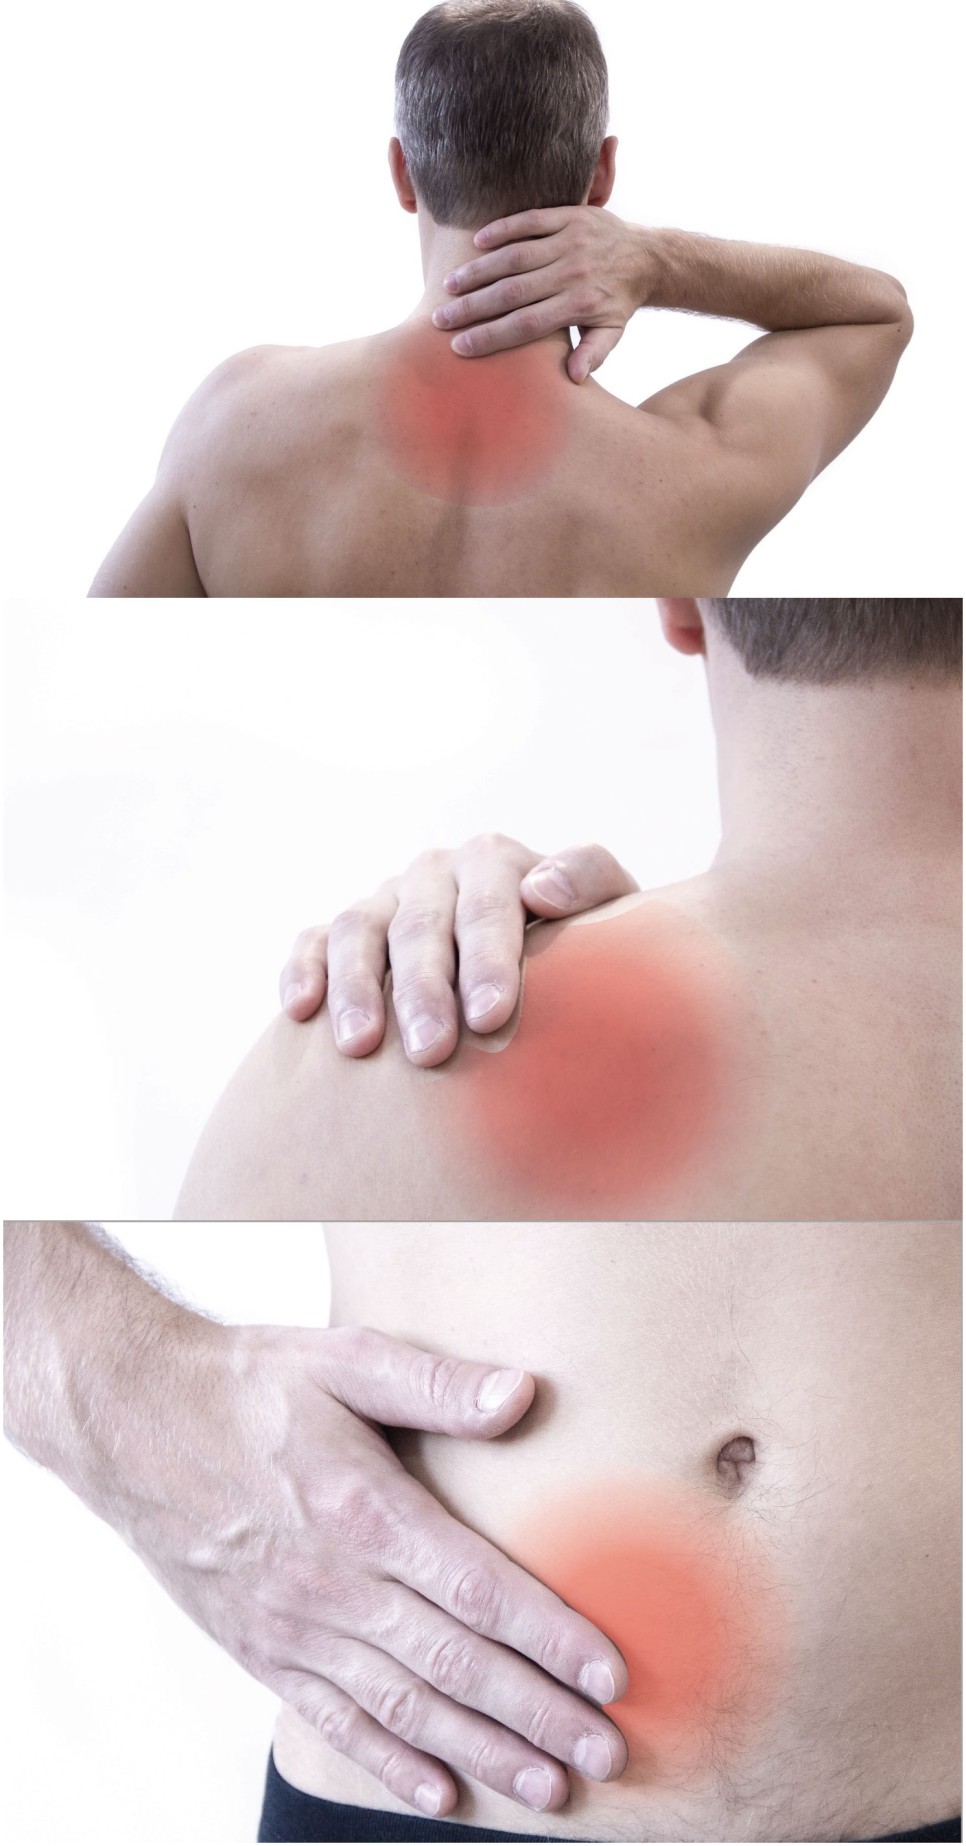 어지러움증과 관련한 연관증상들 - 뒷목 어깨 통증 소화불량